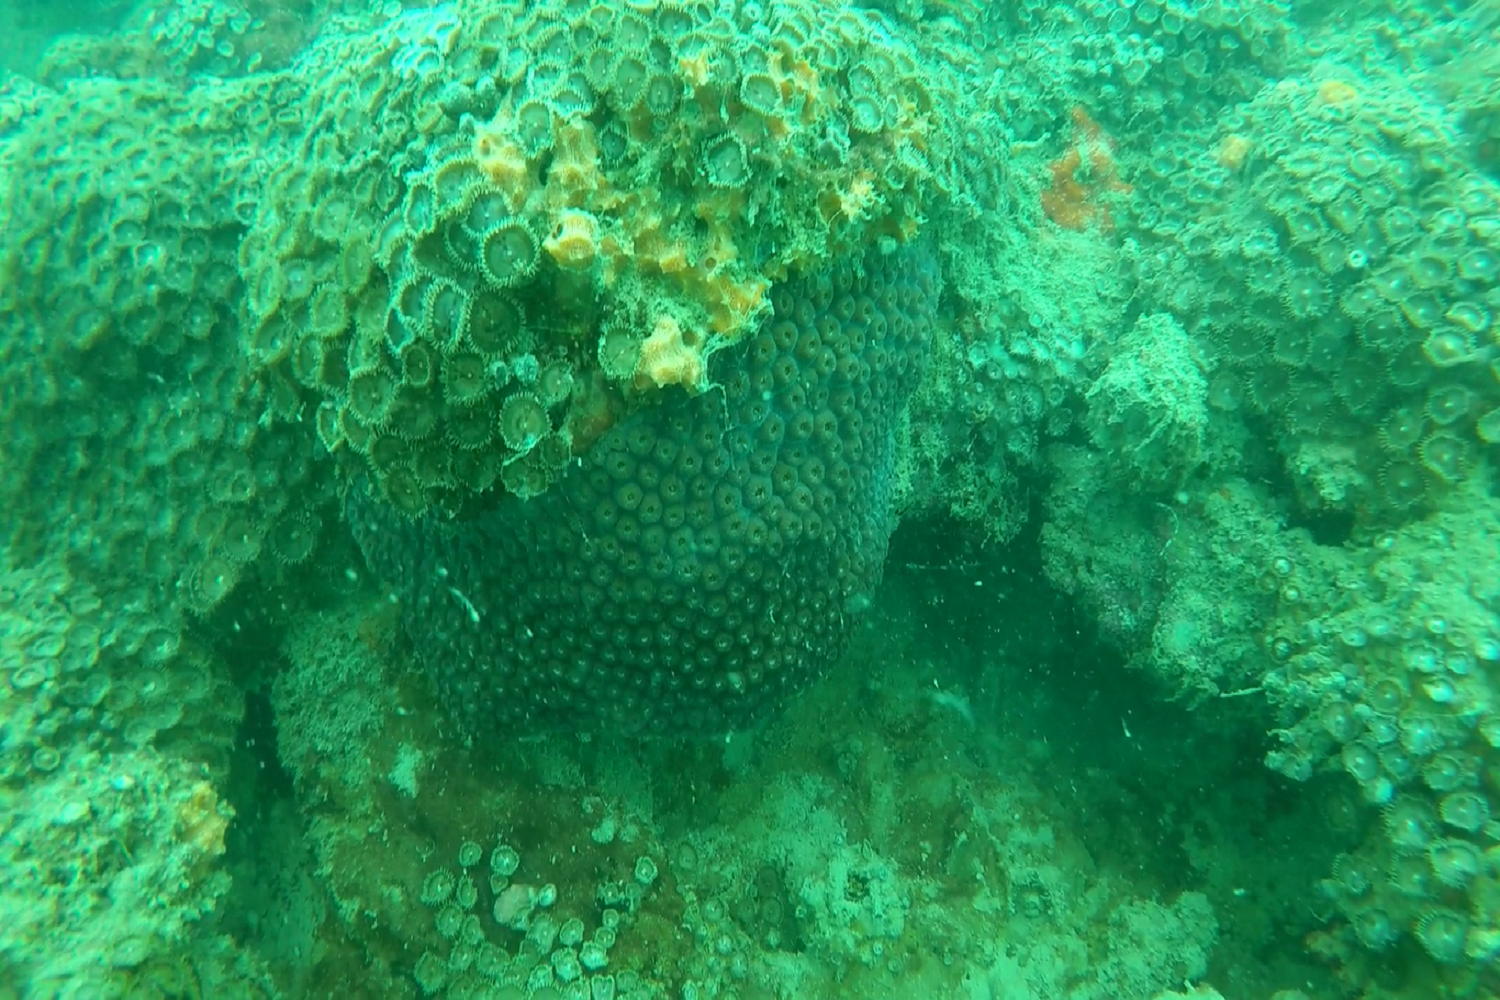 O Palythoa cf. variabilis mata as principais espécies construtoras de recifes de coral em poucos meses e forma um “tapete” sobre eles, acabando com a biodiversidade local. (foto: arquivo pessoal)